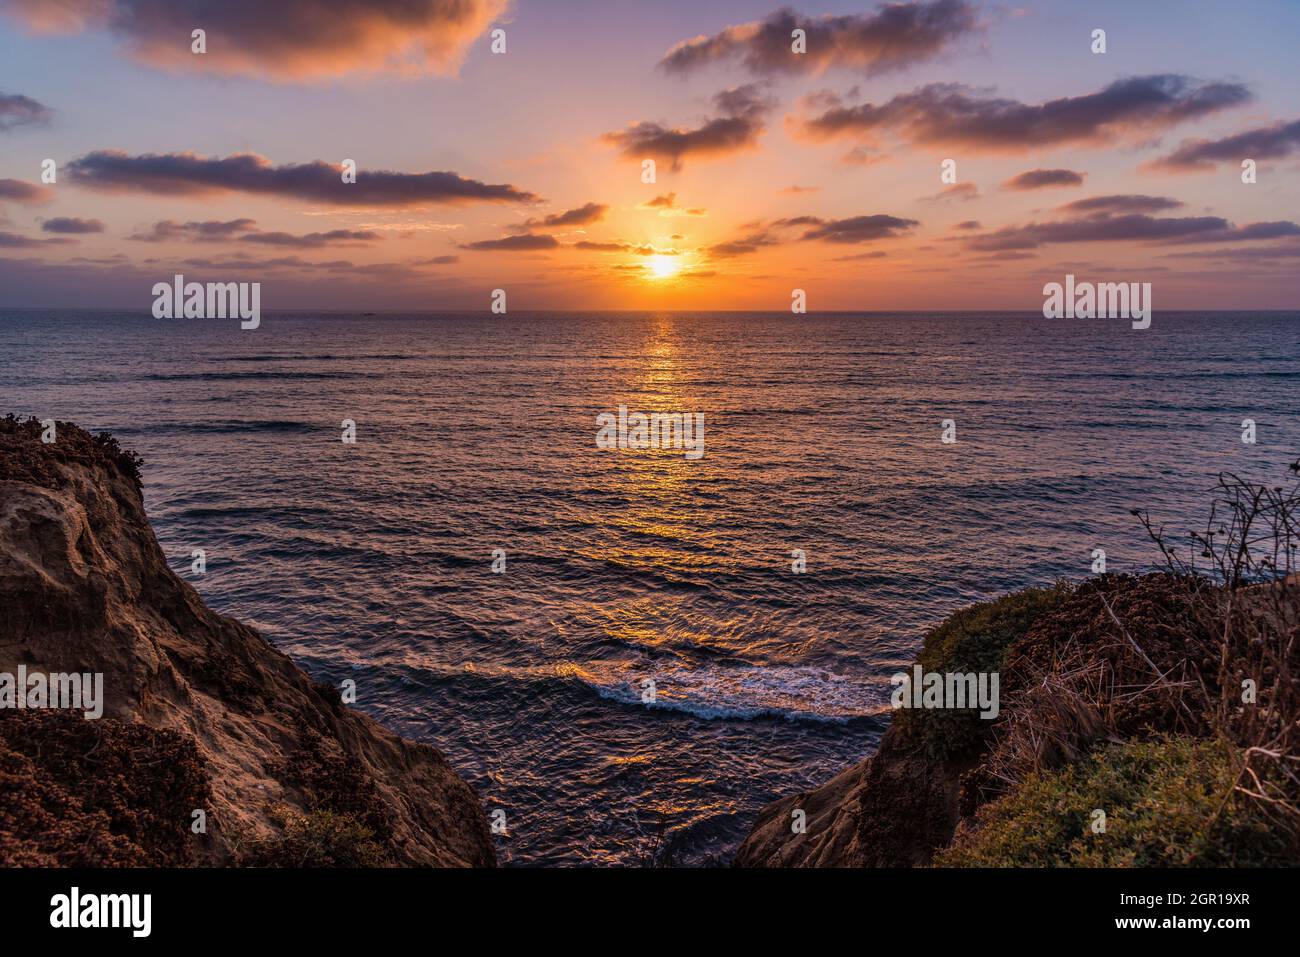 El colorido cielo de la puesta de sol sobre las vistas del océano desde los acantilados de San Diego California, Costa Oeste de Norteamérica Foto de stock